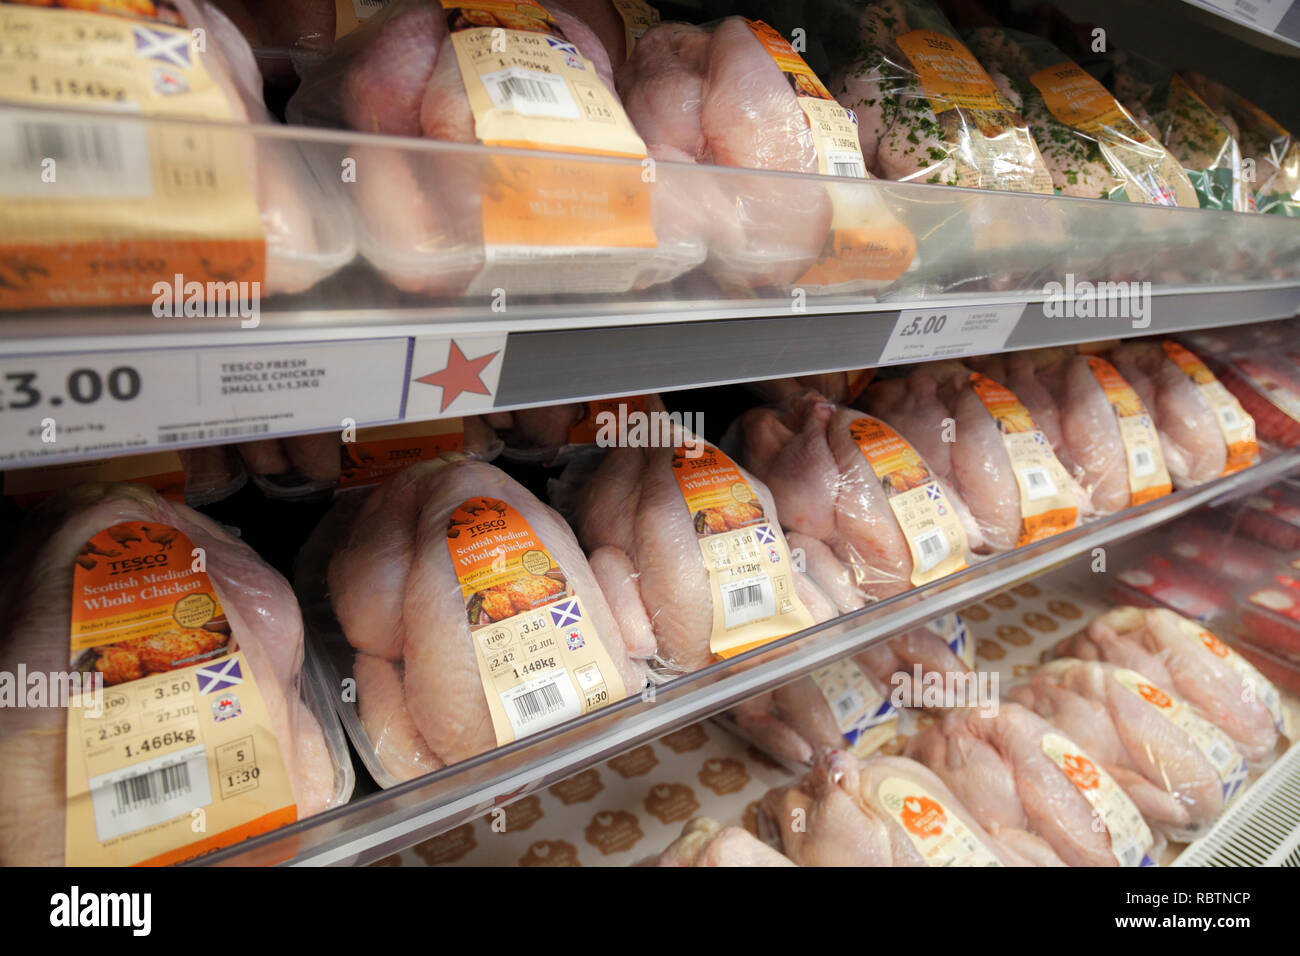 chicken on shelf in supermarket Stock Photo